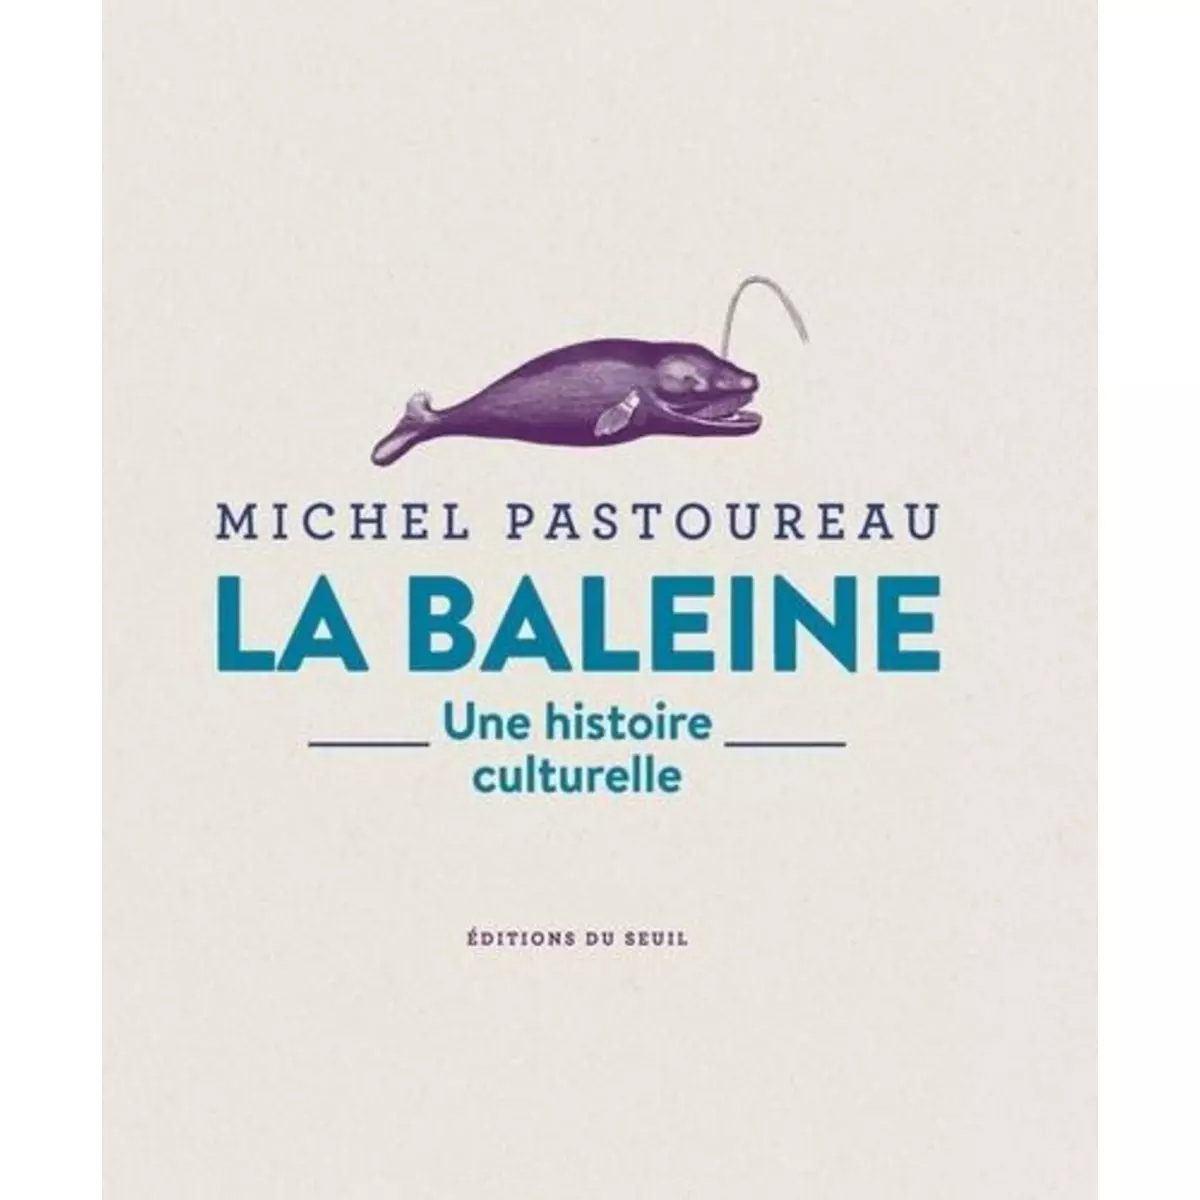  LA BALEINE. UNE HISTOIRE CULTURELLE, Pastoureau Michel